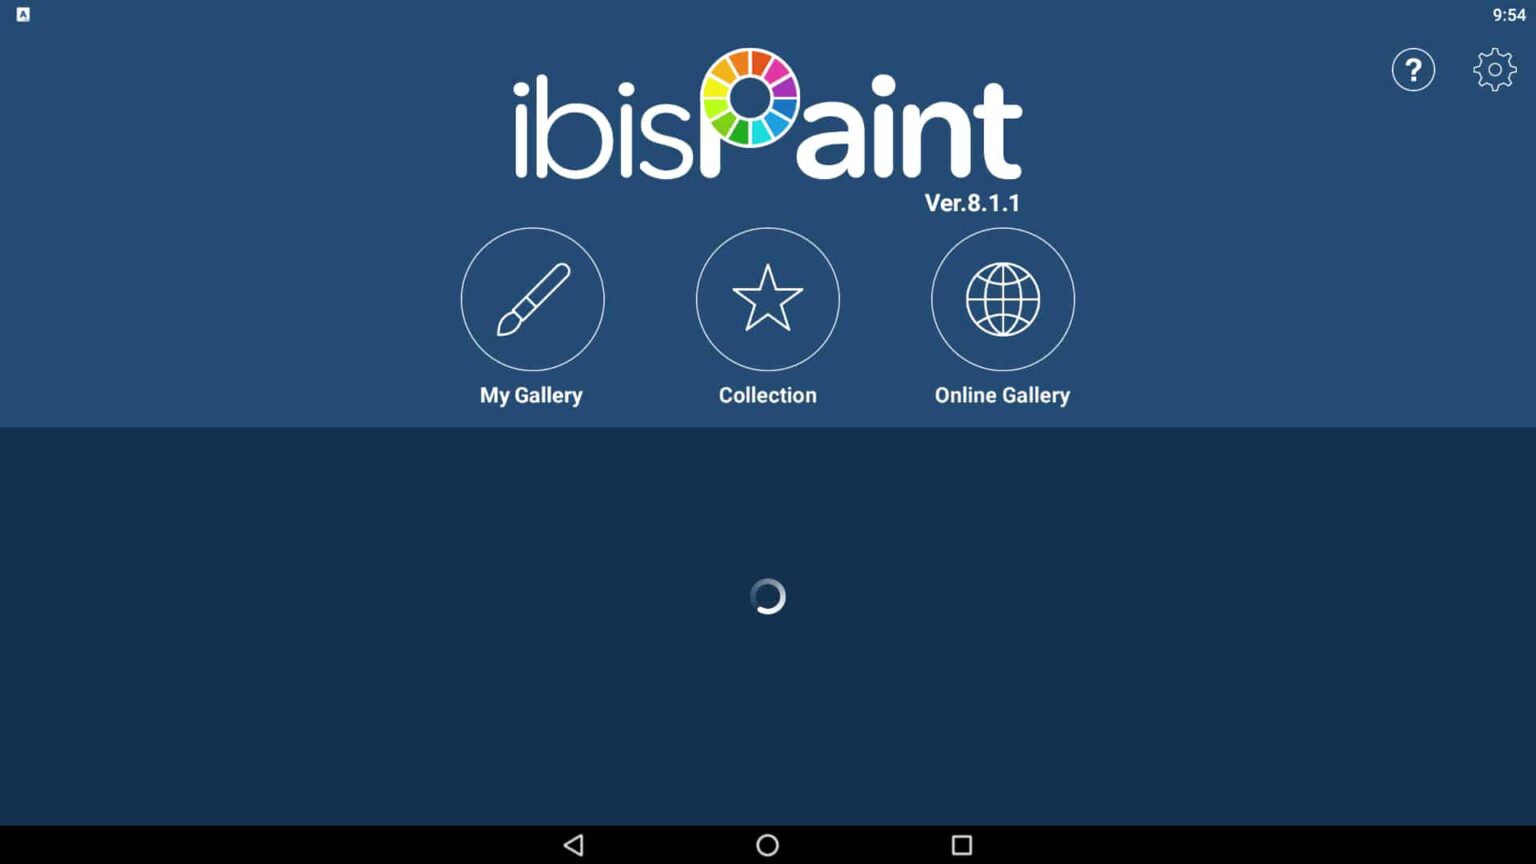 is ibis paint on mac